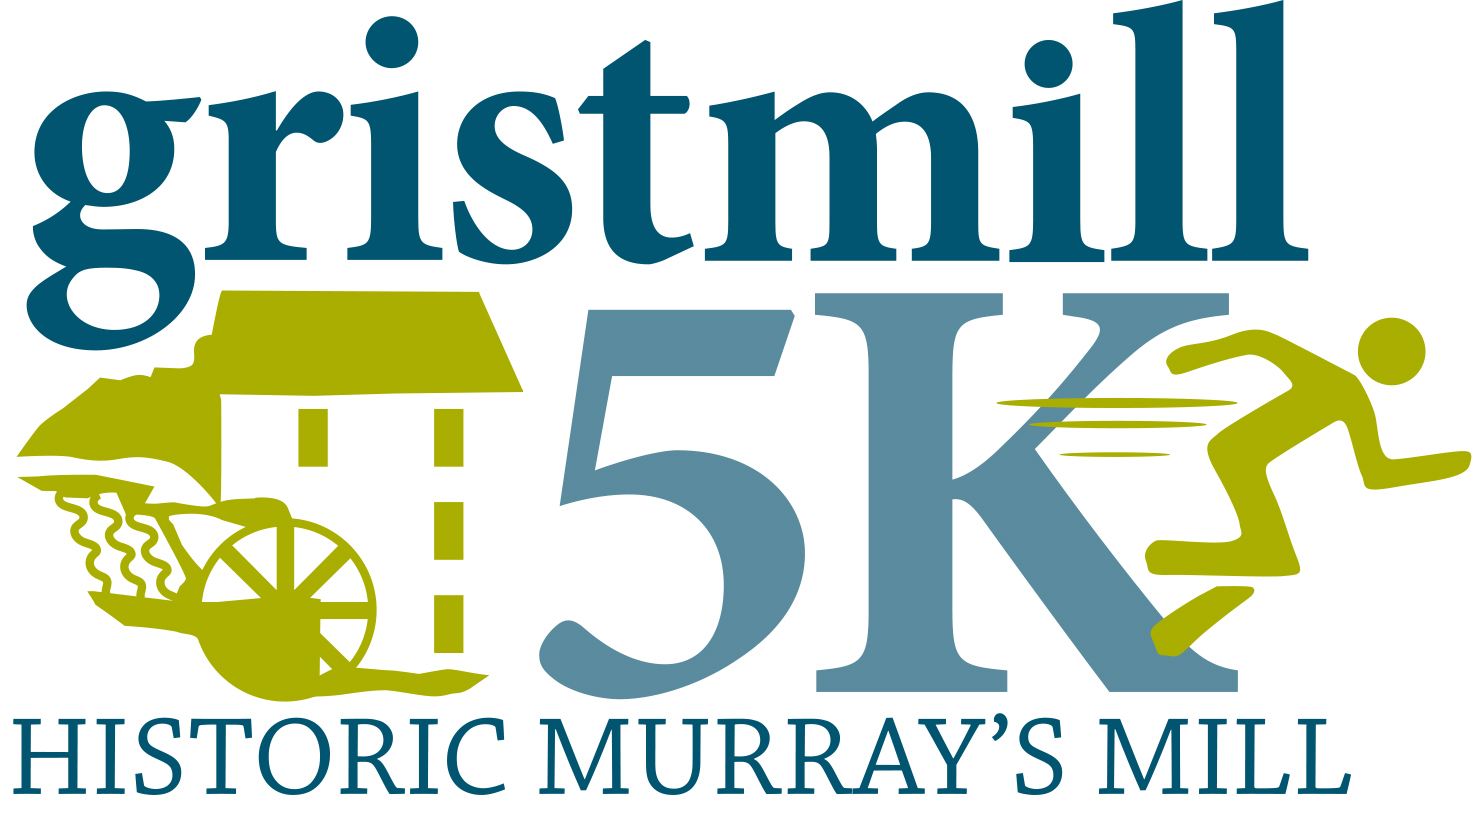 Gristmill 5K logo on RaceRaves